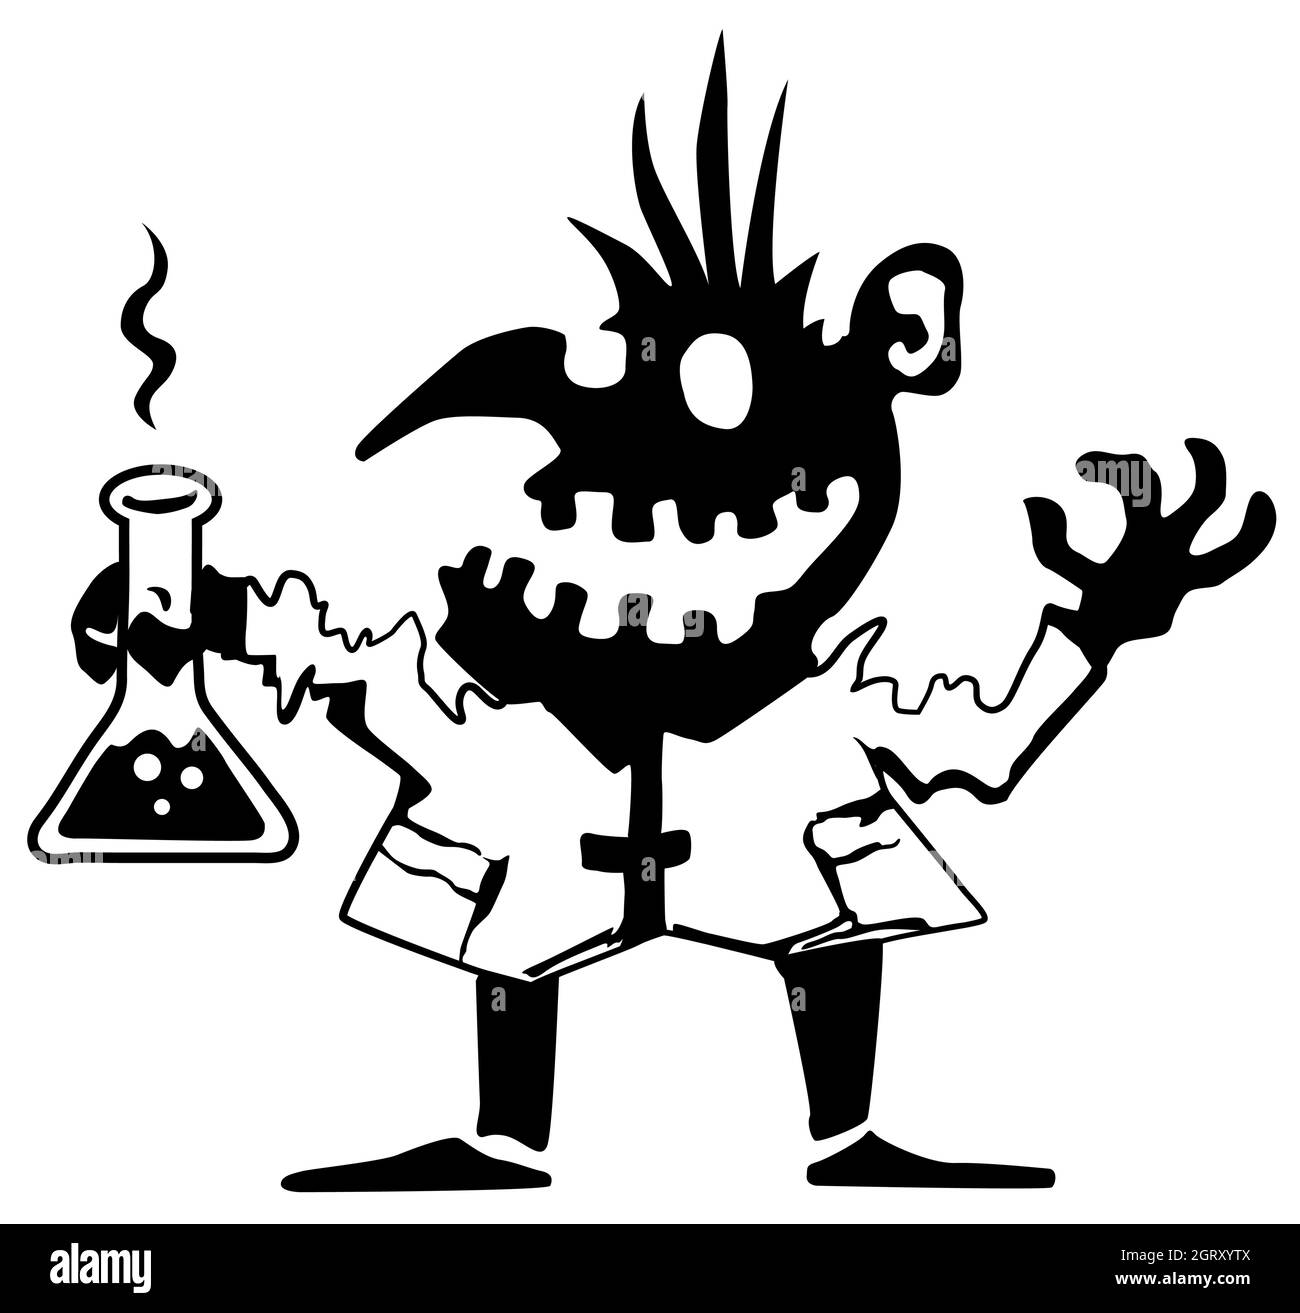 Monster Halloween Kreatur verrückt Wissenschaftler Silhouette Schablone schwarz, Vektor-Illustration, horizontal, über weiß, isoliert Stock Vektor